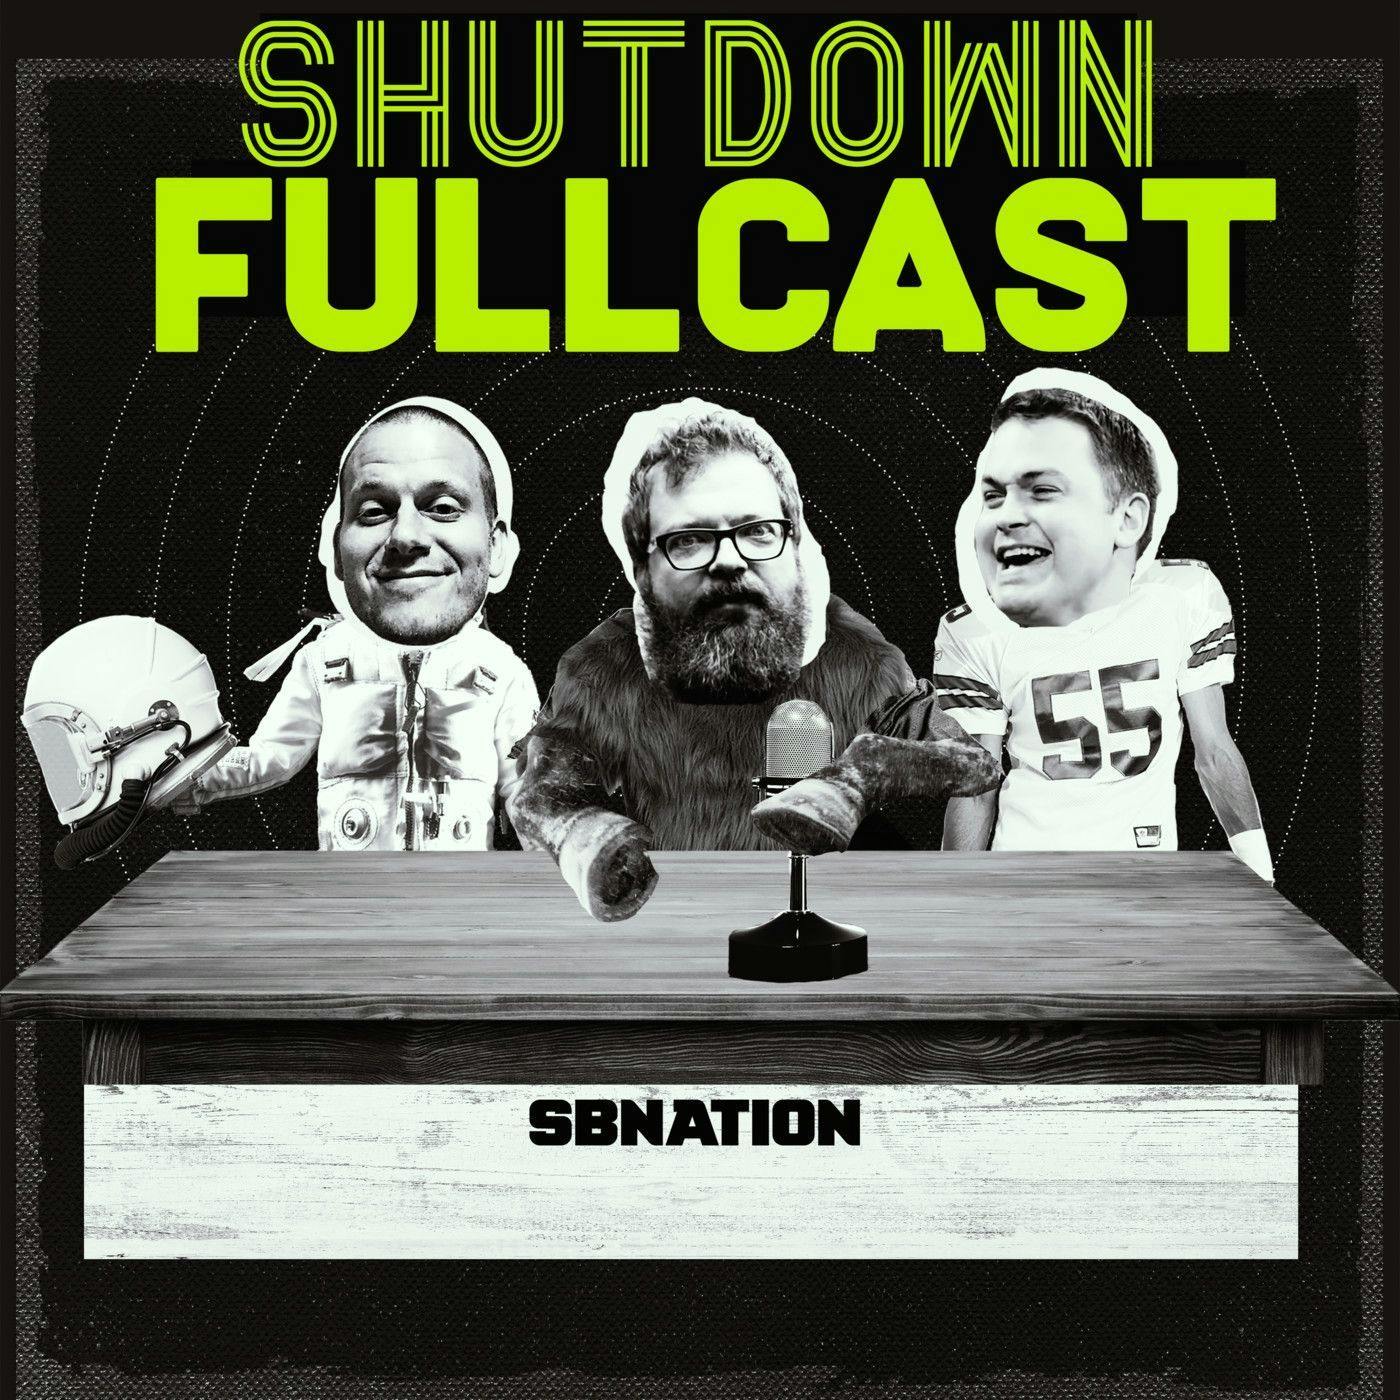 Shutdown Fullcast 40 for 40: The 2017 Citrus Bowl